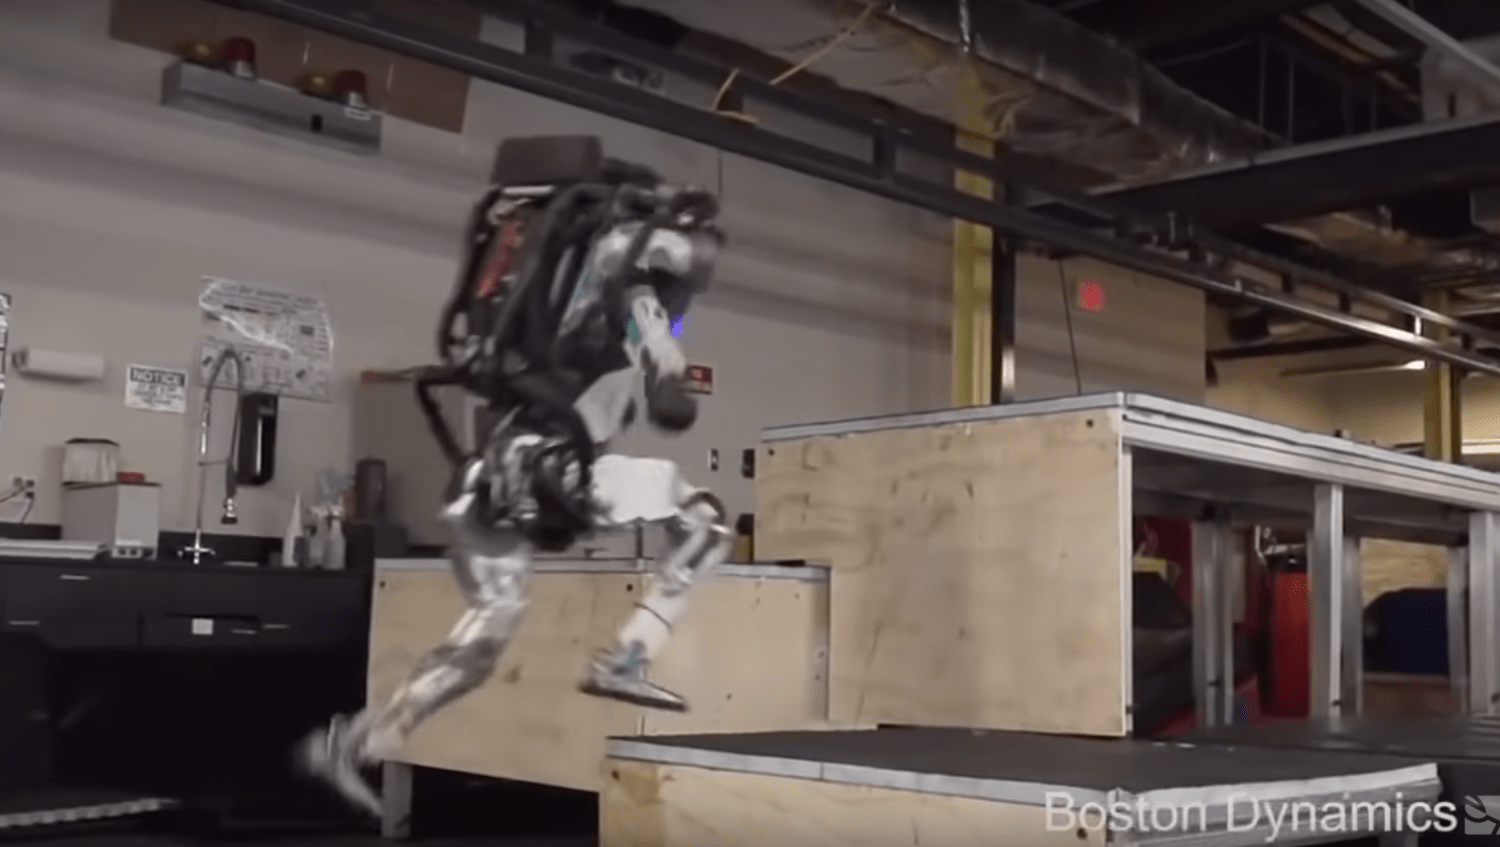 Avancement dans la robotique et intelligence artificielle | Boston Dynamics